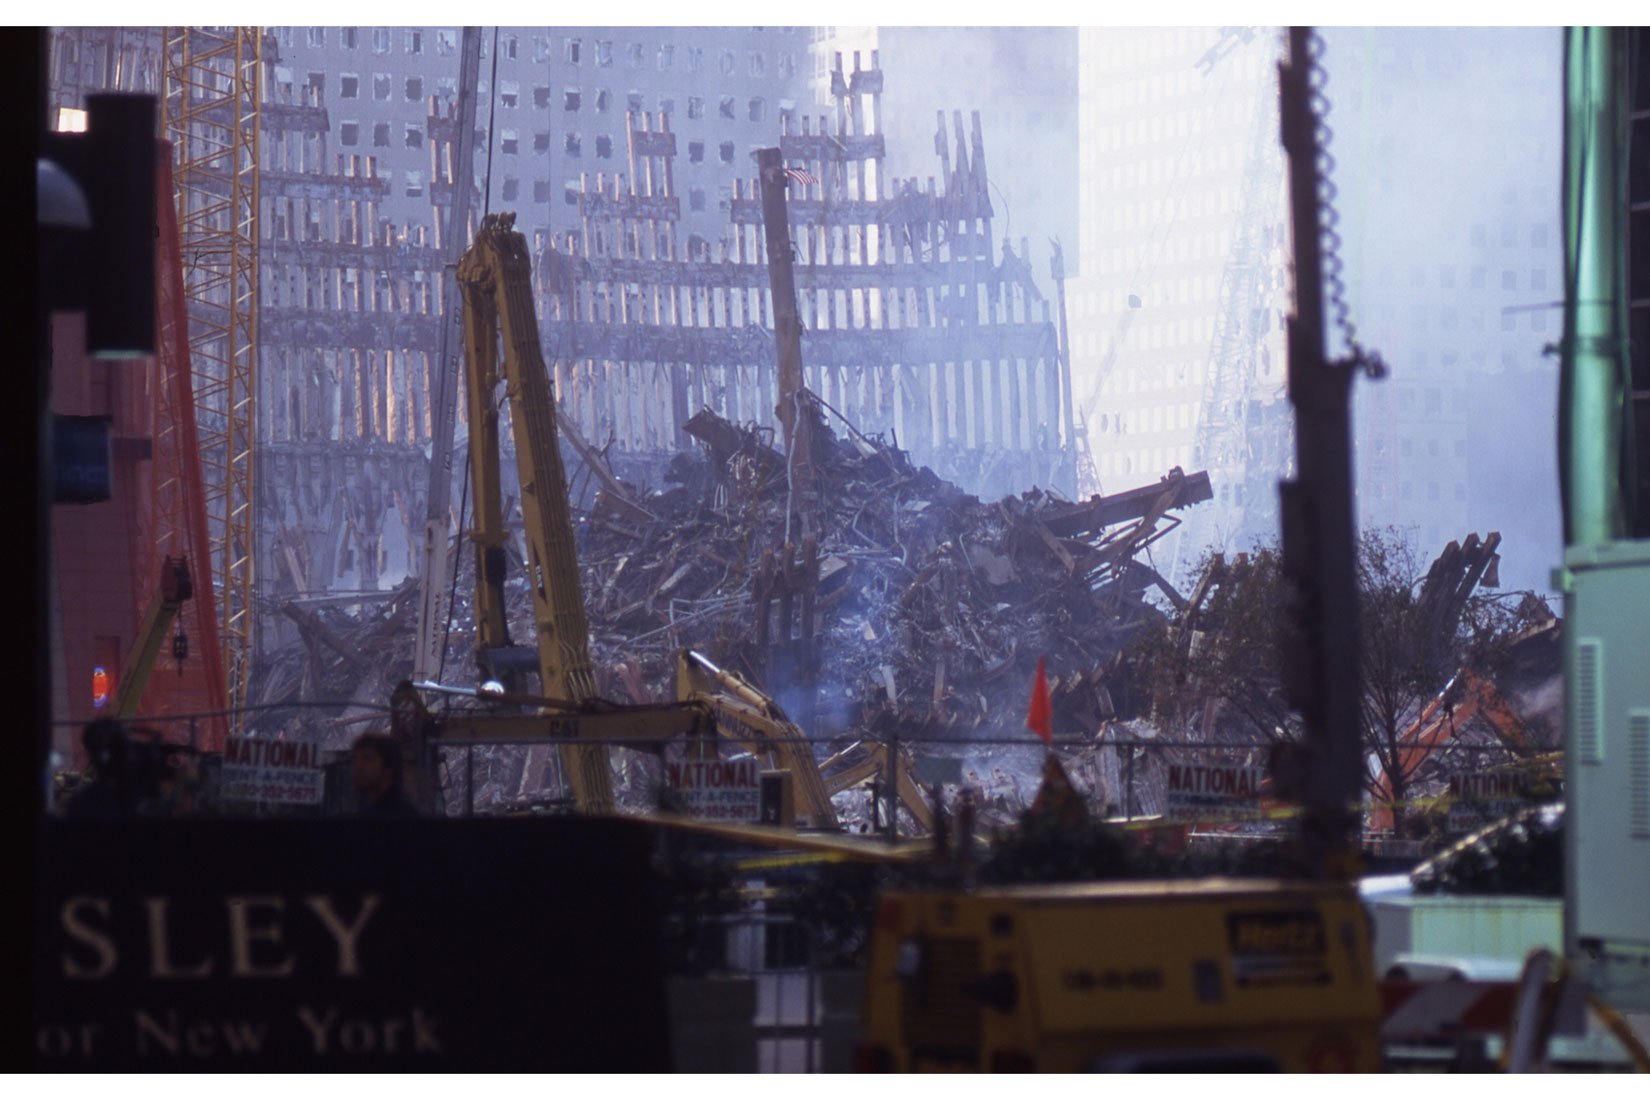  9/11 Ground Zero NYC 